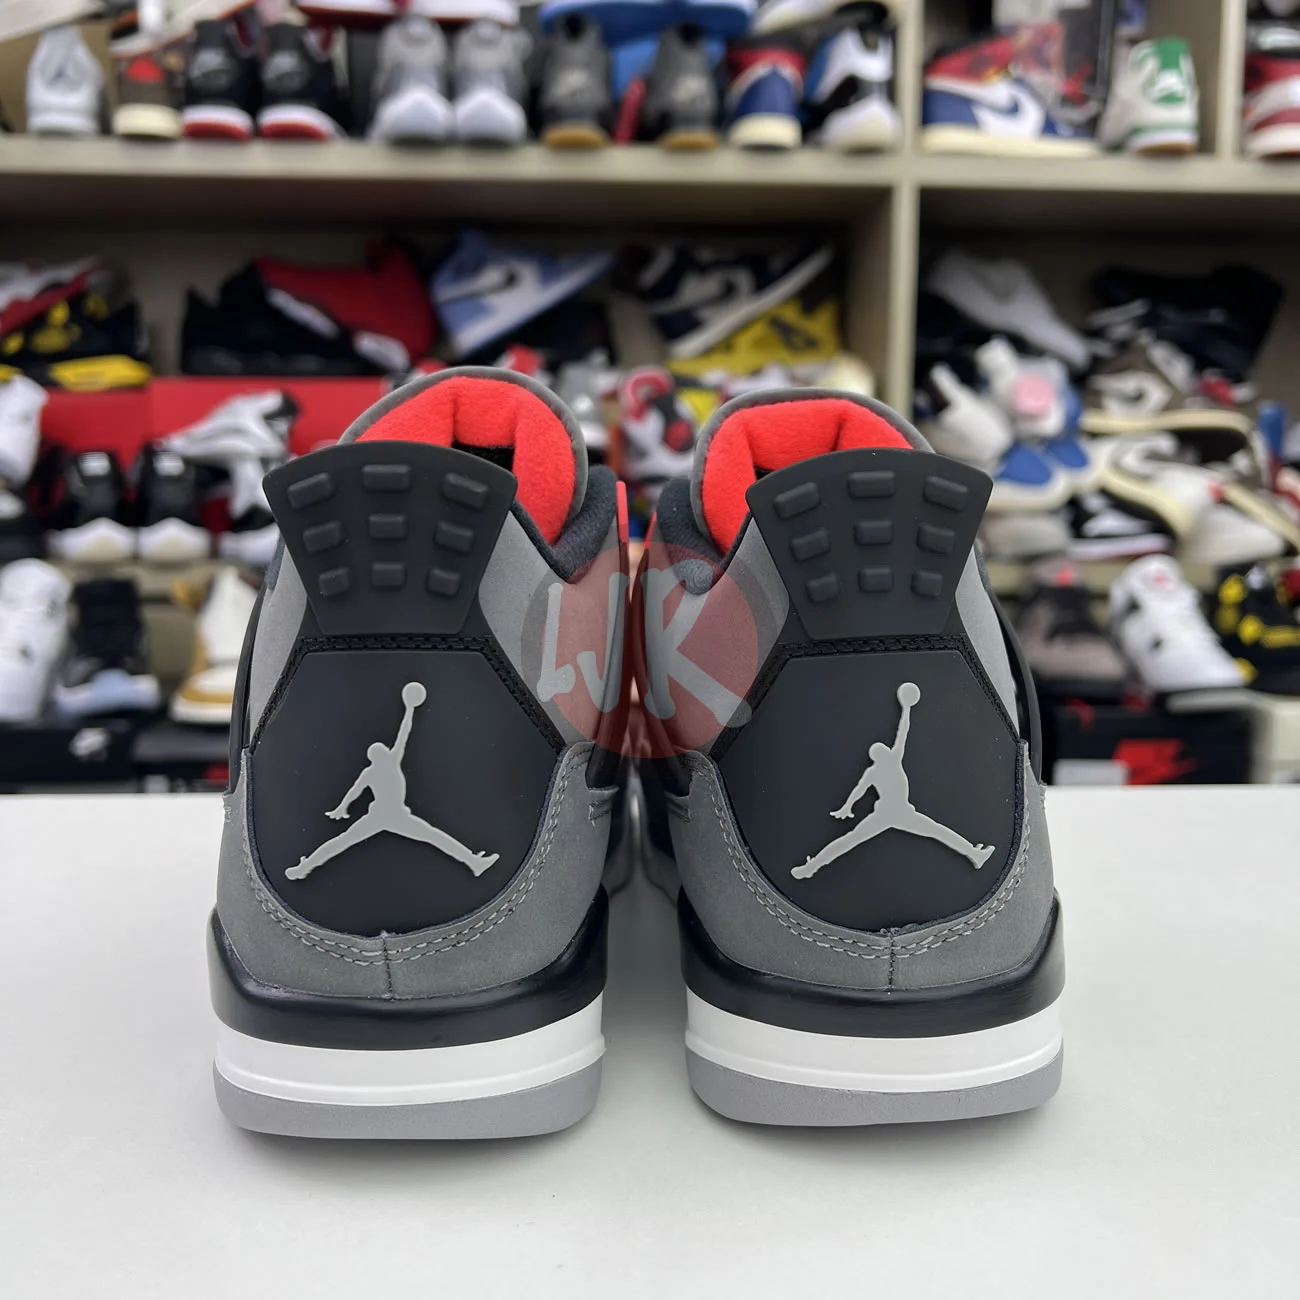 Air Jordan 4 Retro Infrared Dh6927 061 Ljr Sneakers (8) - bc-ljr.net